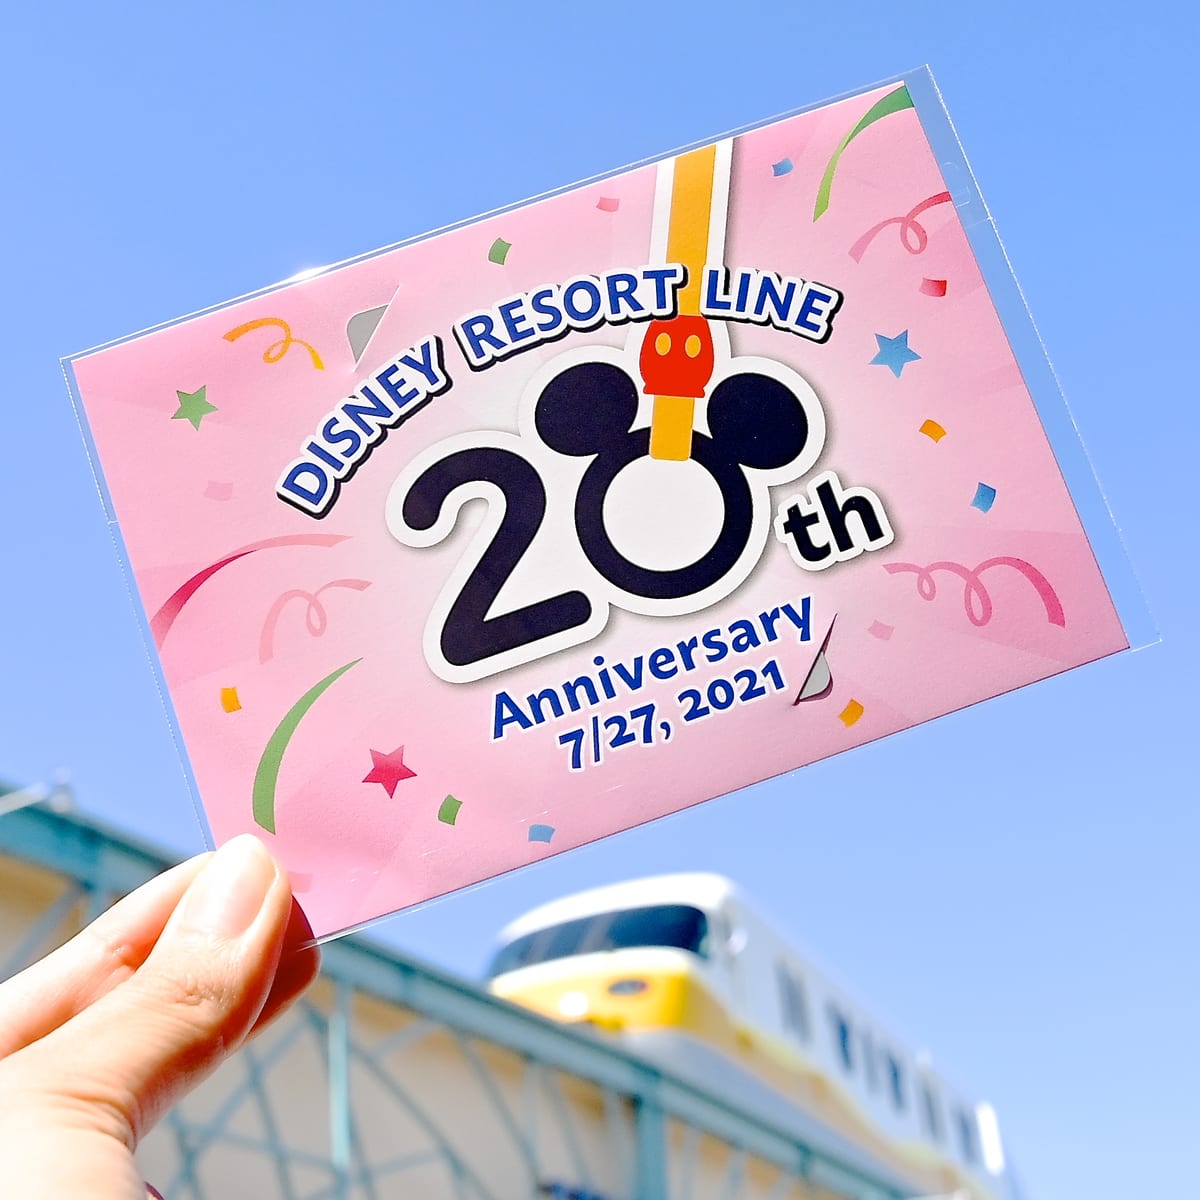 ディズニーリゾートライン開業20周年フリーきっぷ